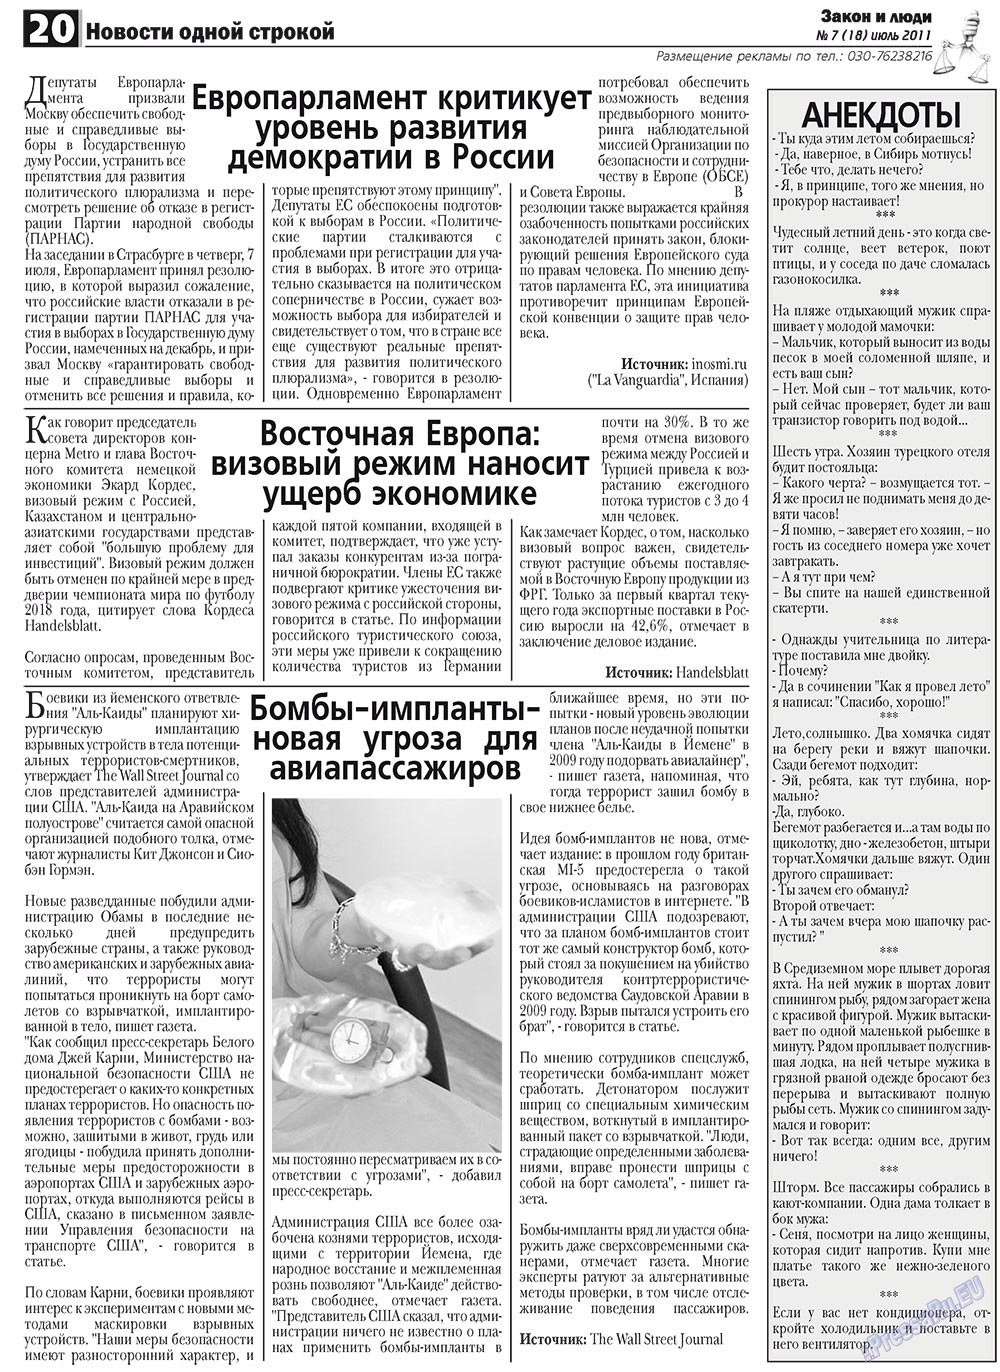 Закон и люди, газета. 2011 №7 стр.20